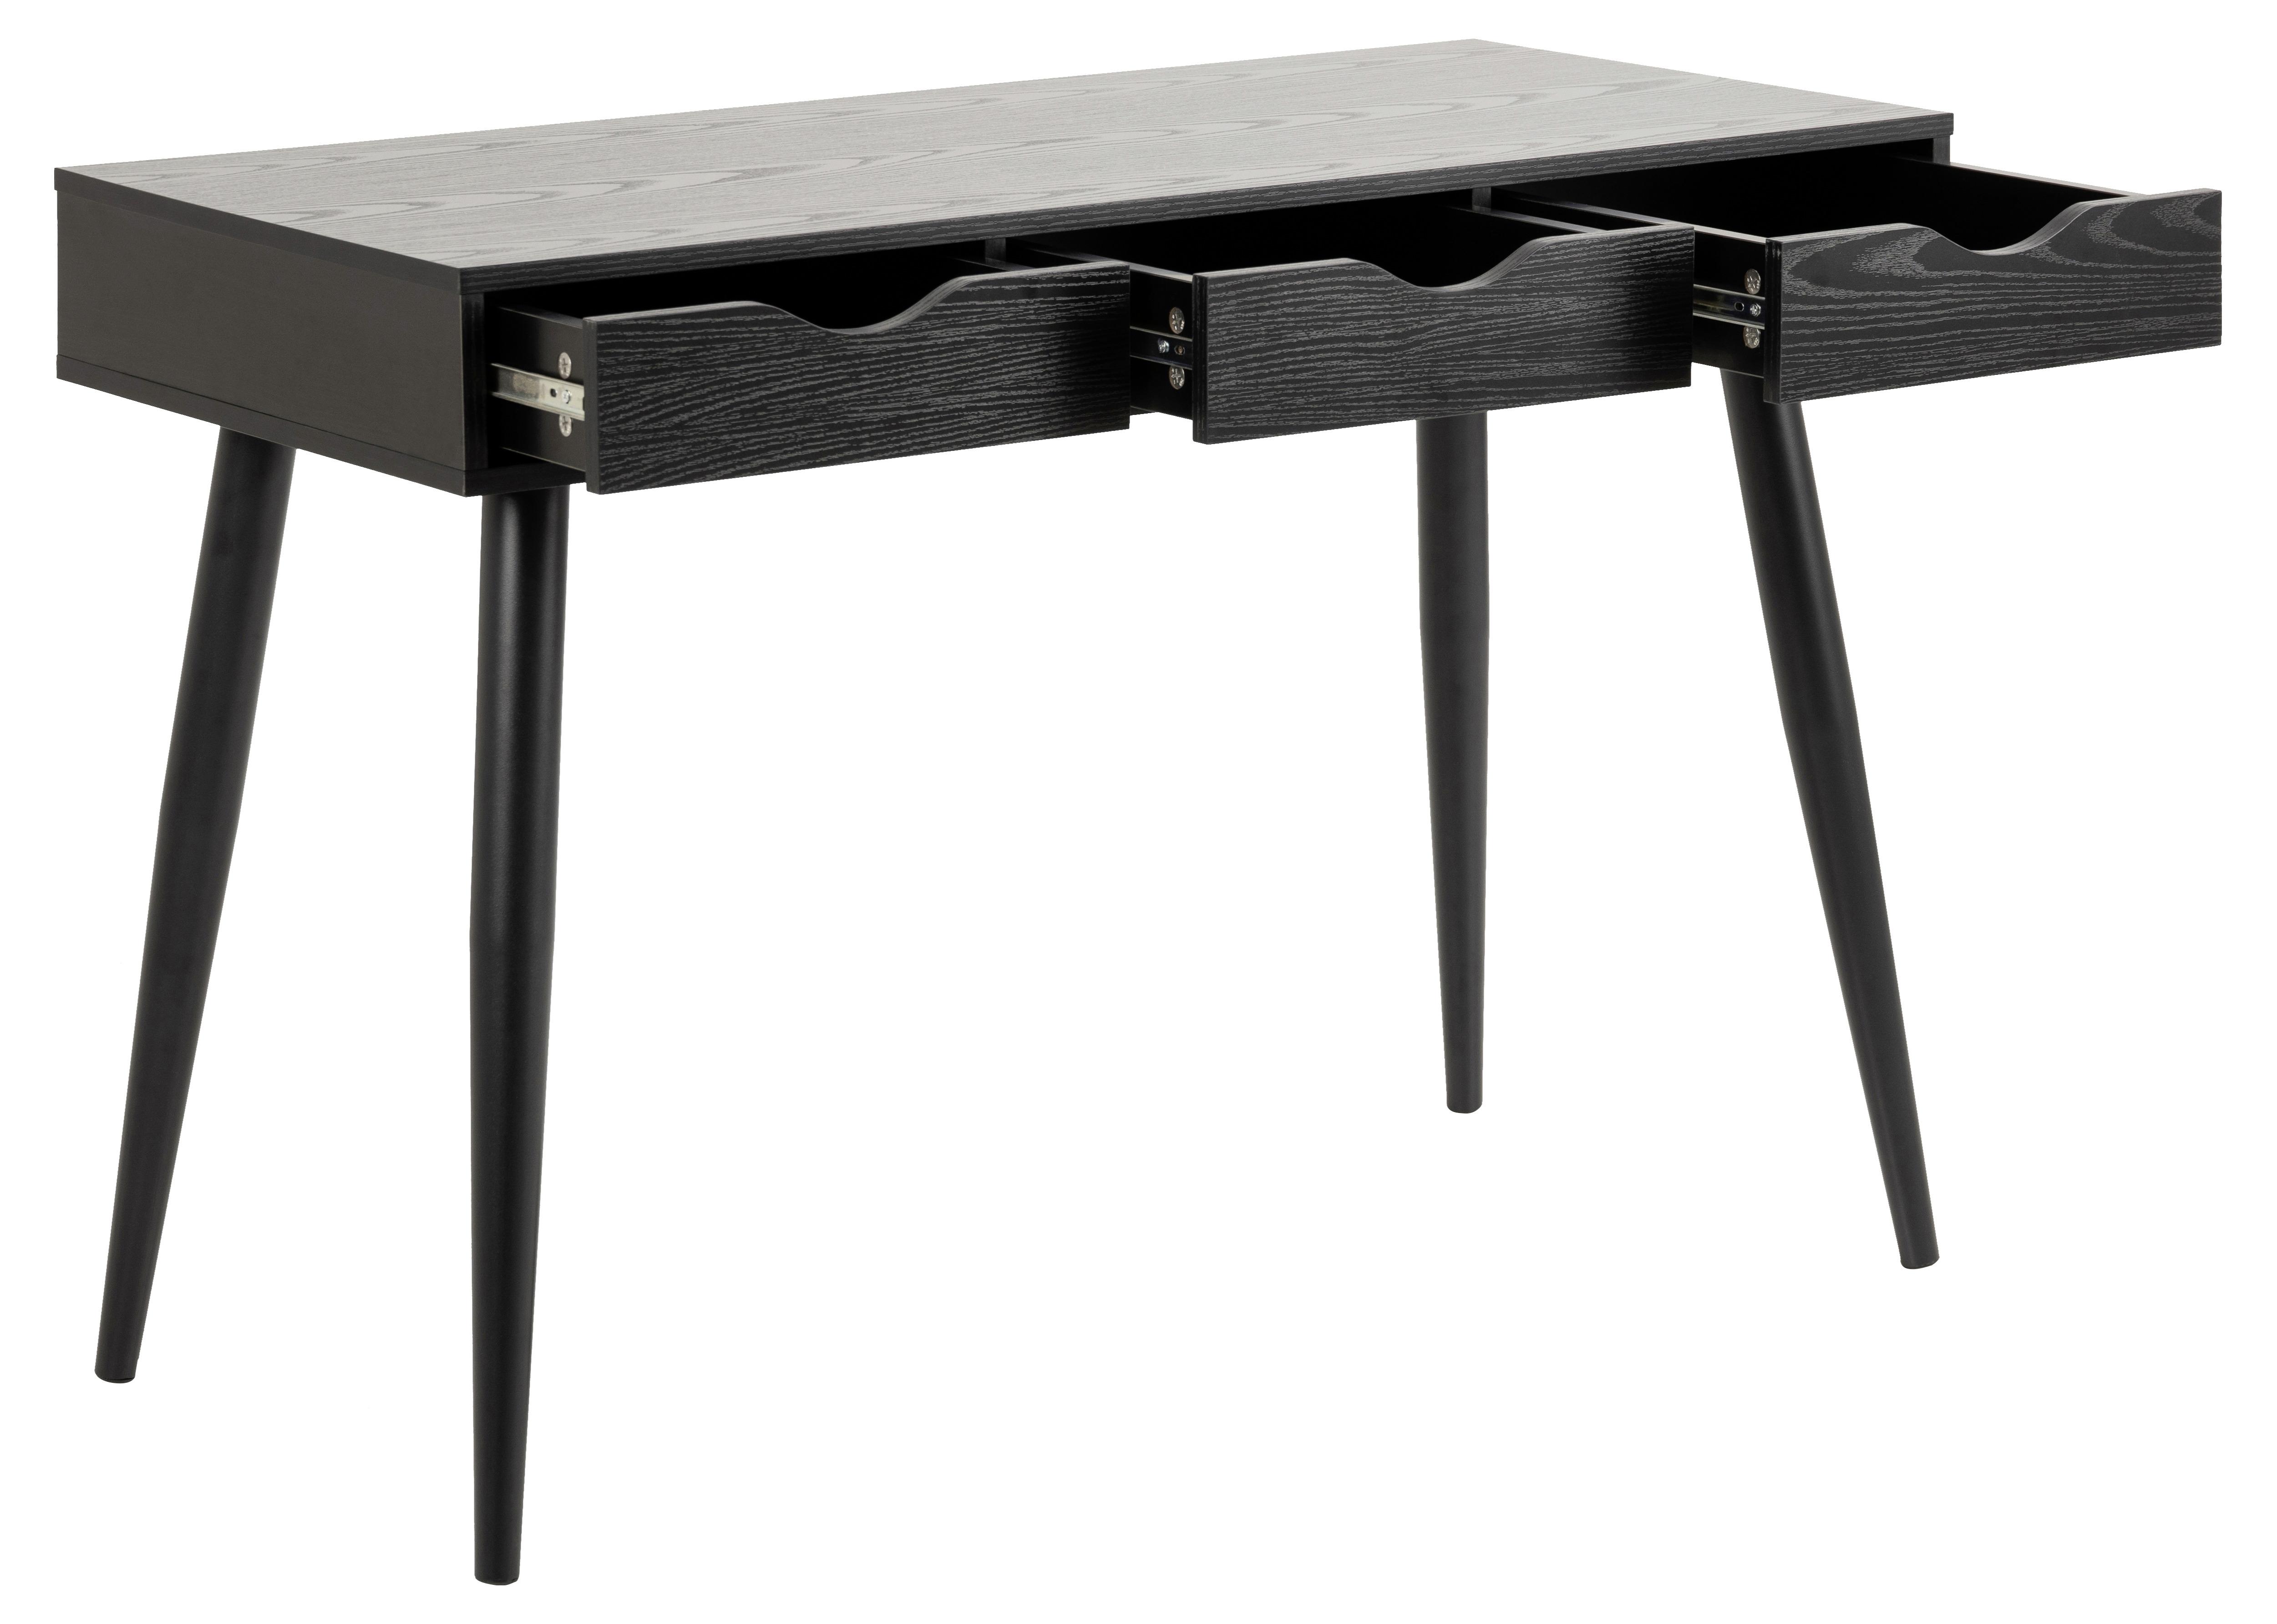 Schreibtisch mit Laden B 110cm H 77,1cm Neptun, Eschefarben - Eschefarben/Schwarz, MODERN, Holzwerkstoff/Metall (110/50/77,1cm) - MID.YOU